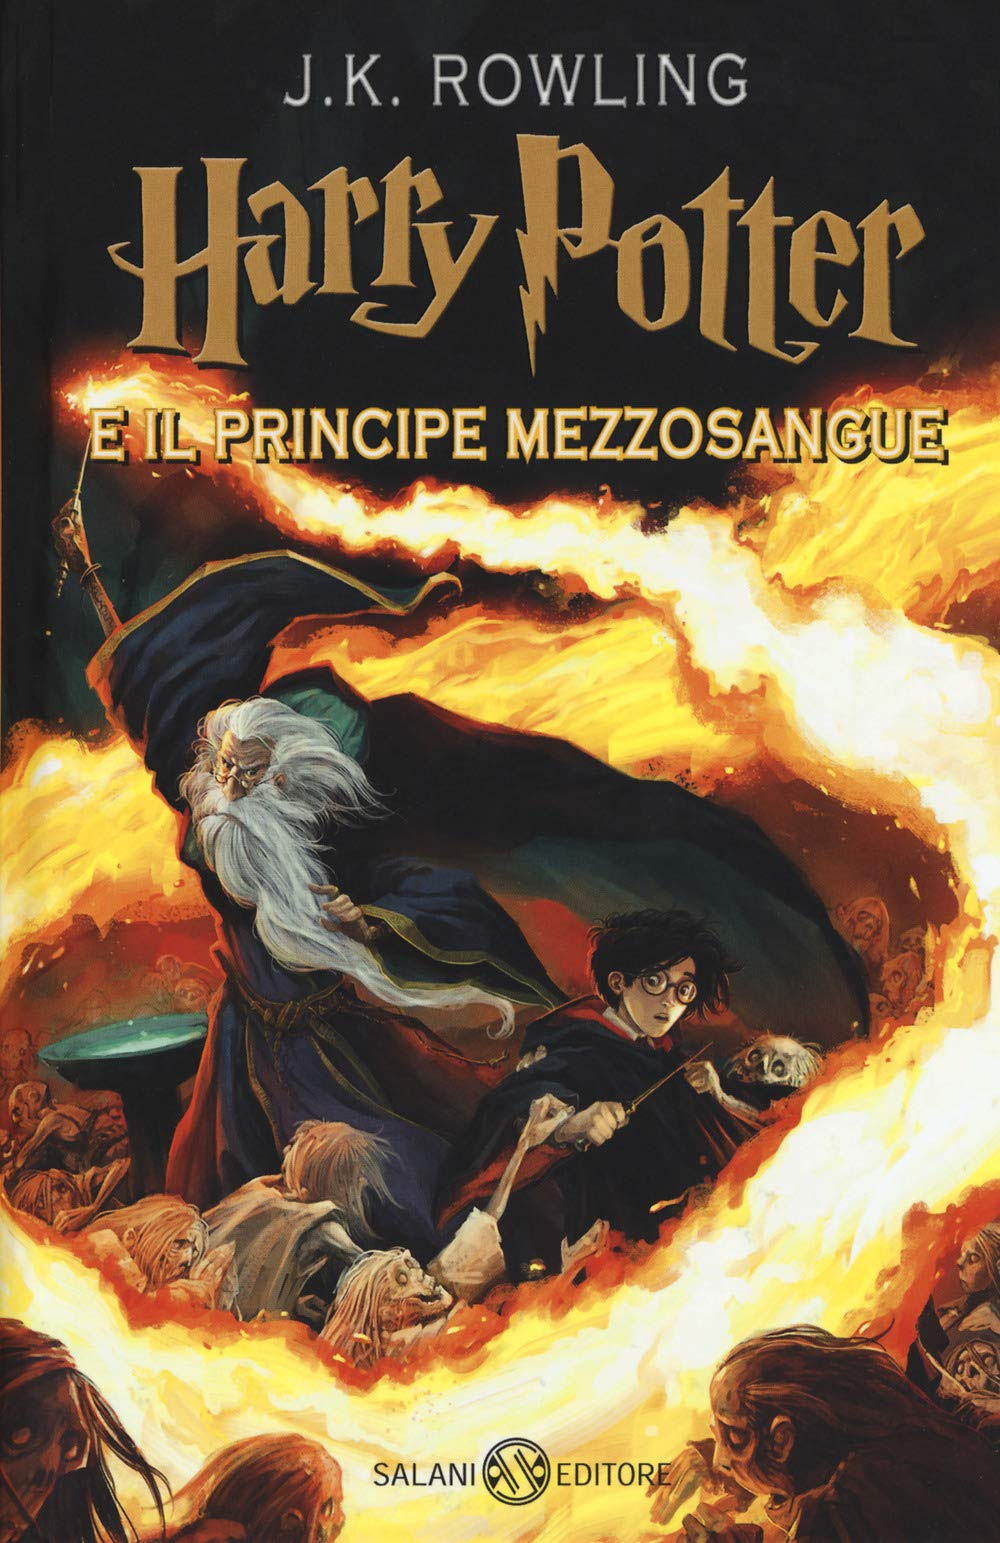 Harry Potter e il Principe Mezzosangue in Kindle/PDF/EPUB